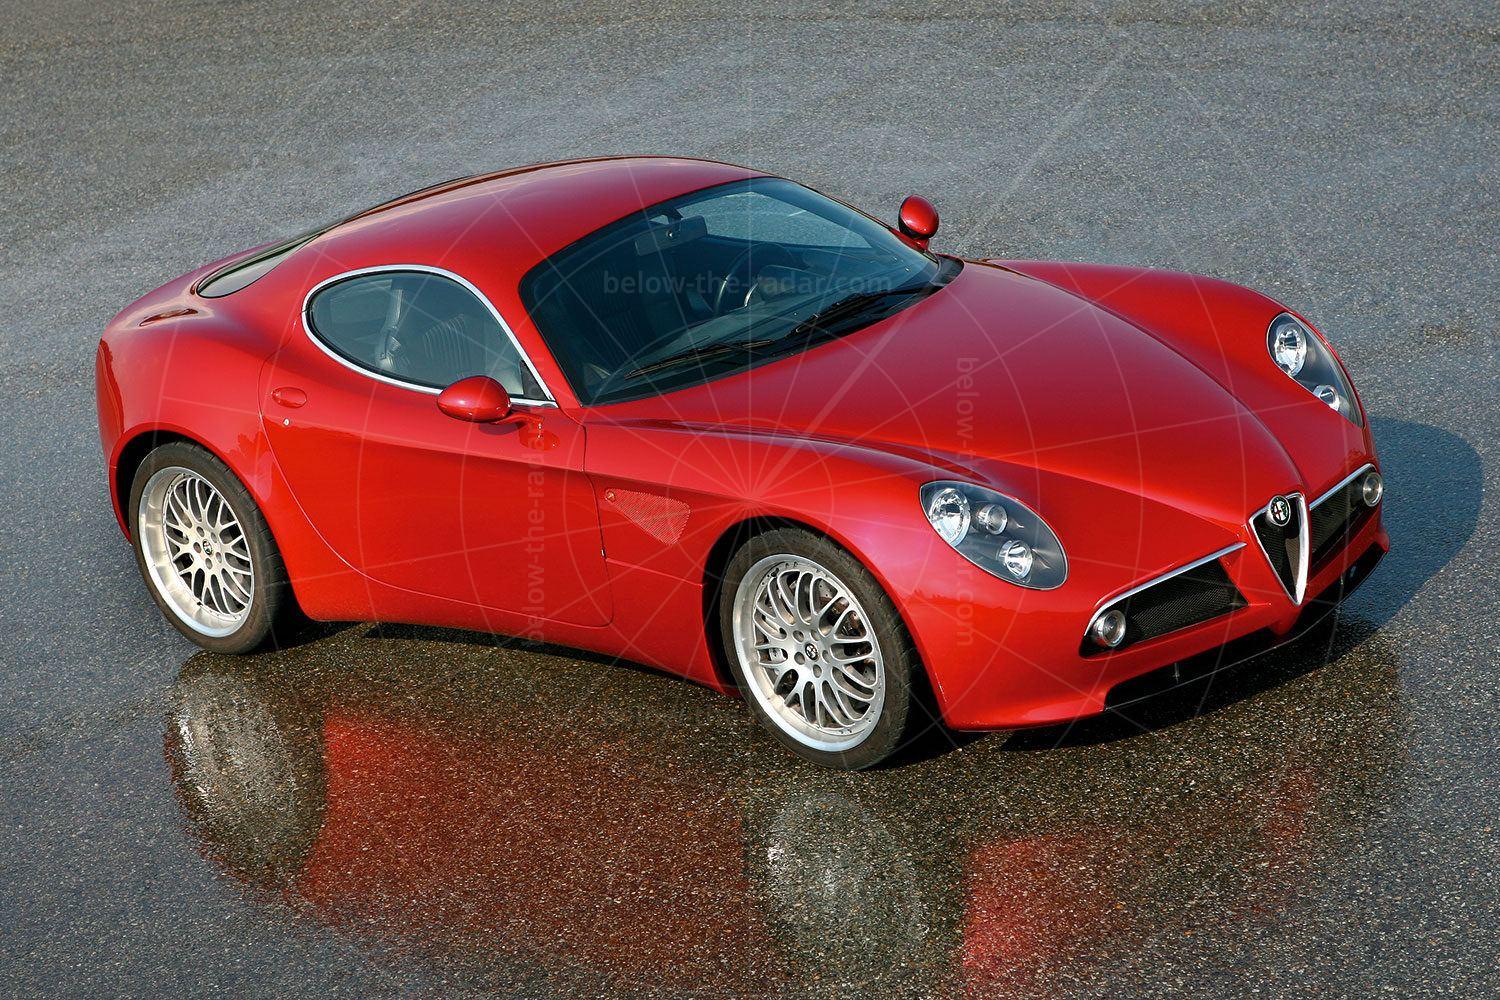 Alfa Romeo 8C Competizione concept Pic: Alfa Romeo | Alfa Romeo 8C Competizione concept